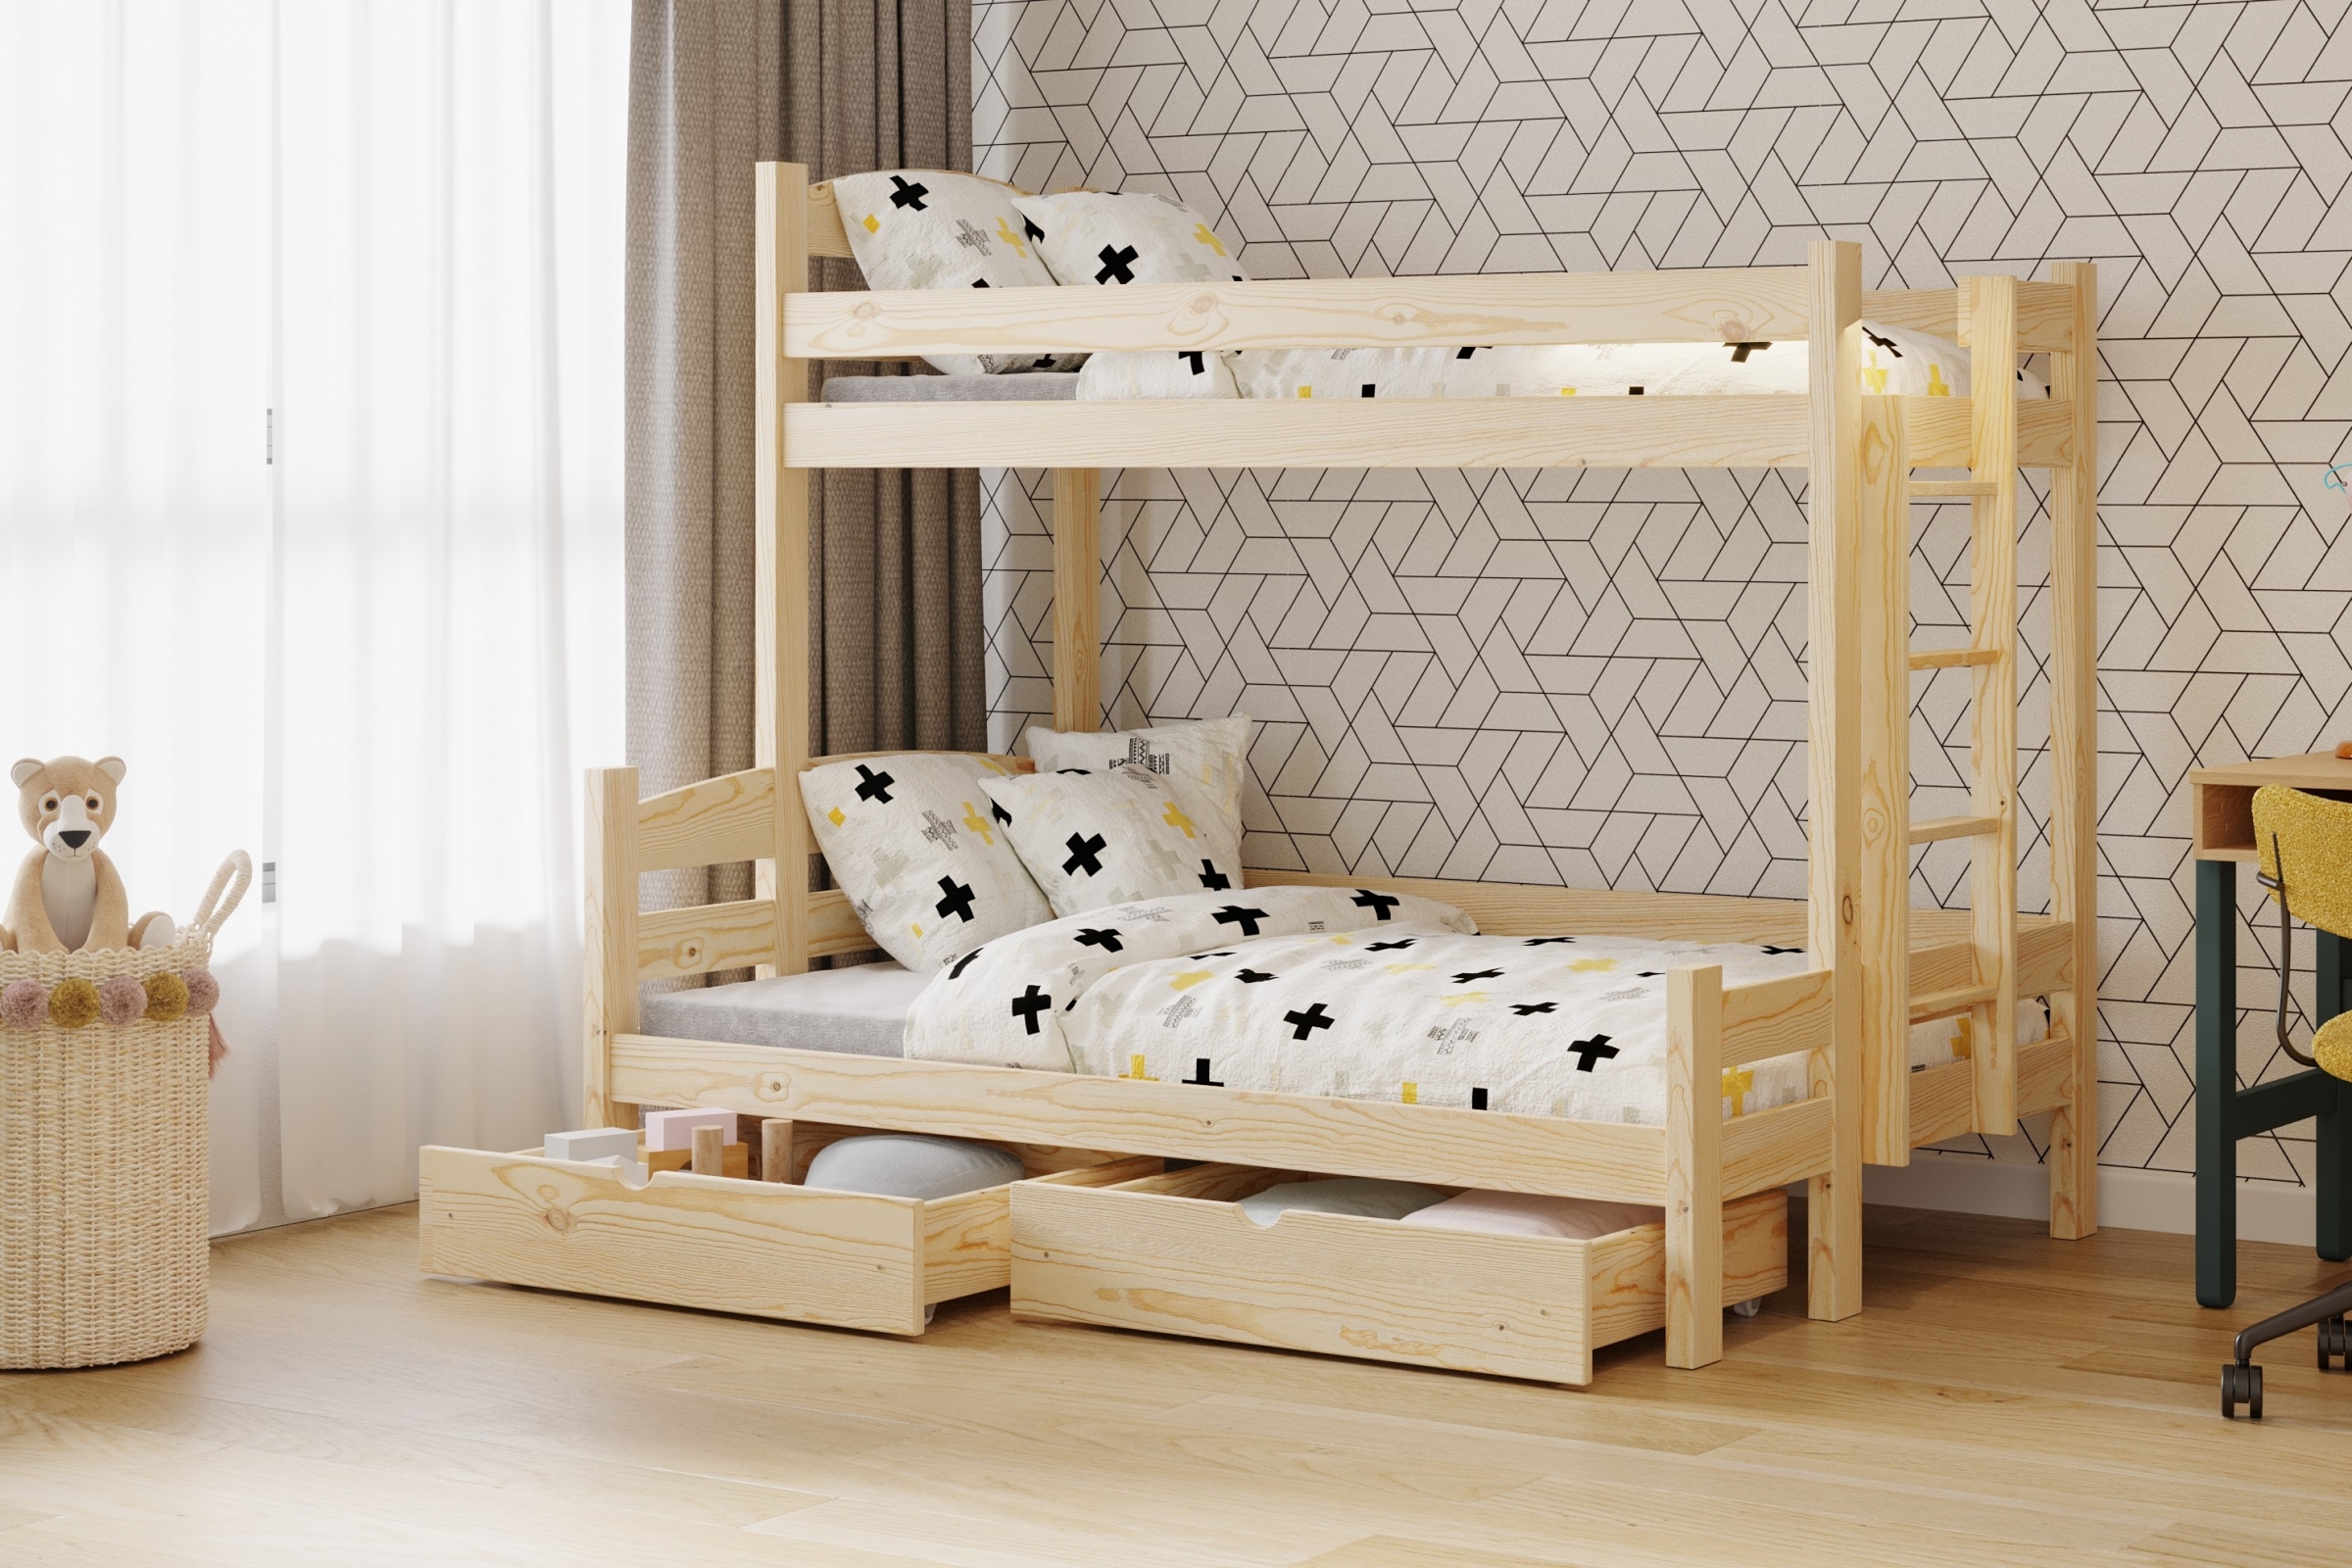 Lovic emeletes ágy, fiókokkal, bal oldal - 90x200 cm/120x200 cm - fenyőfa Emeletes ágy fiokokkal Lovic - fenyőfa - aranzacja